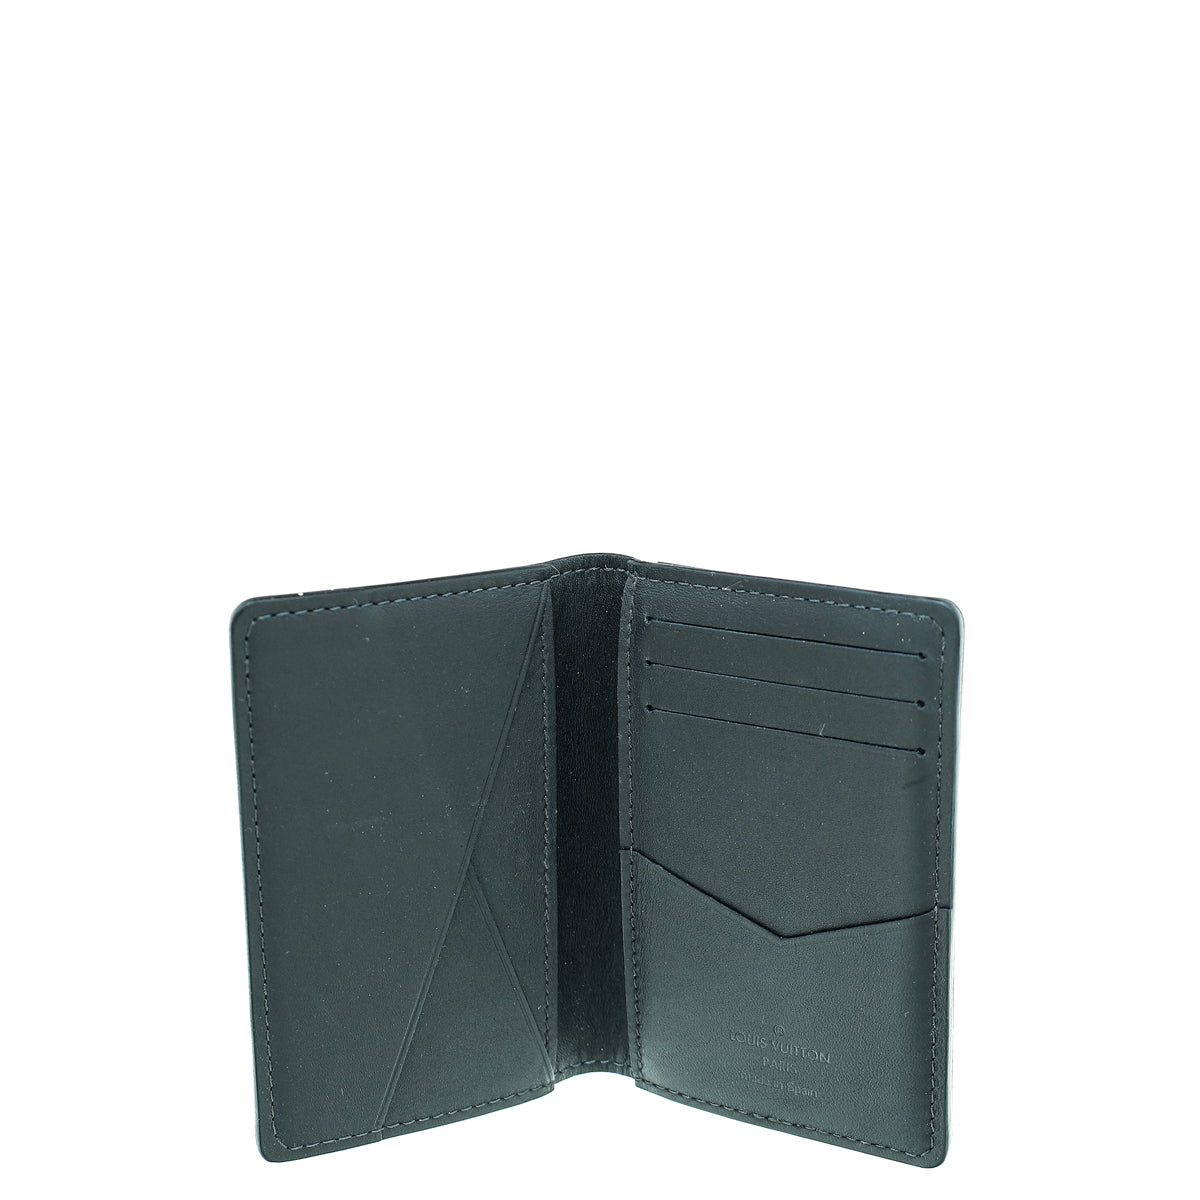 LOUIS VUITTON Slender Pocket Organiser Damier Graphite Gray N60256